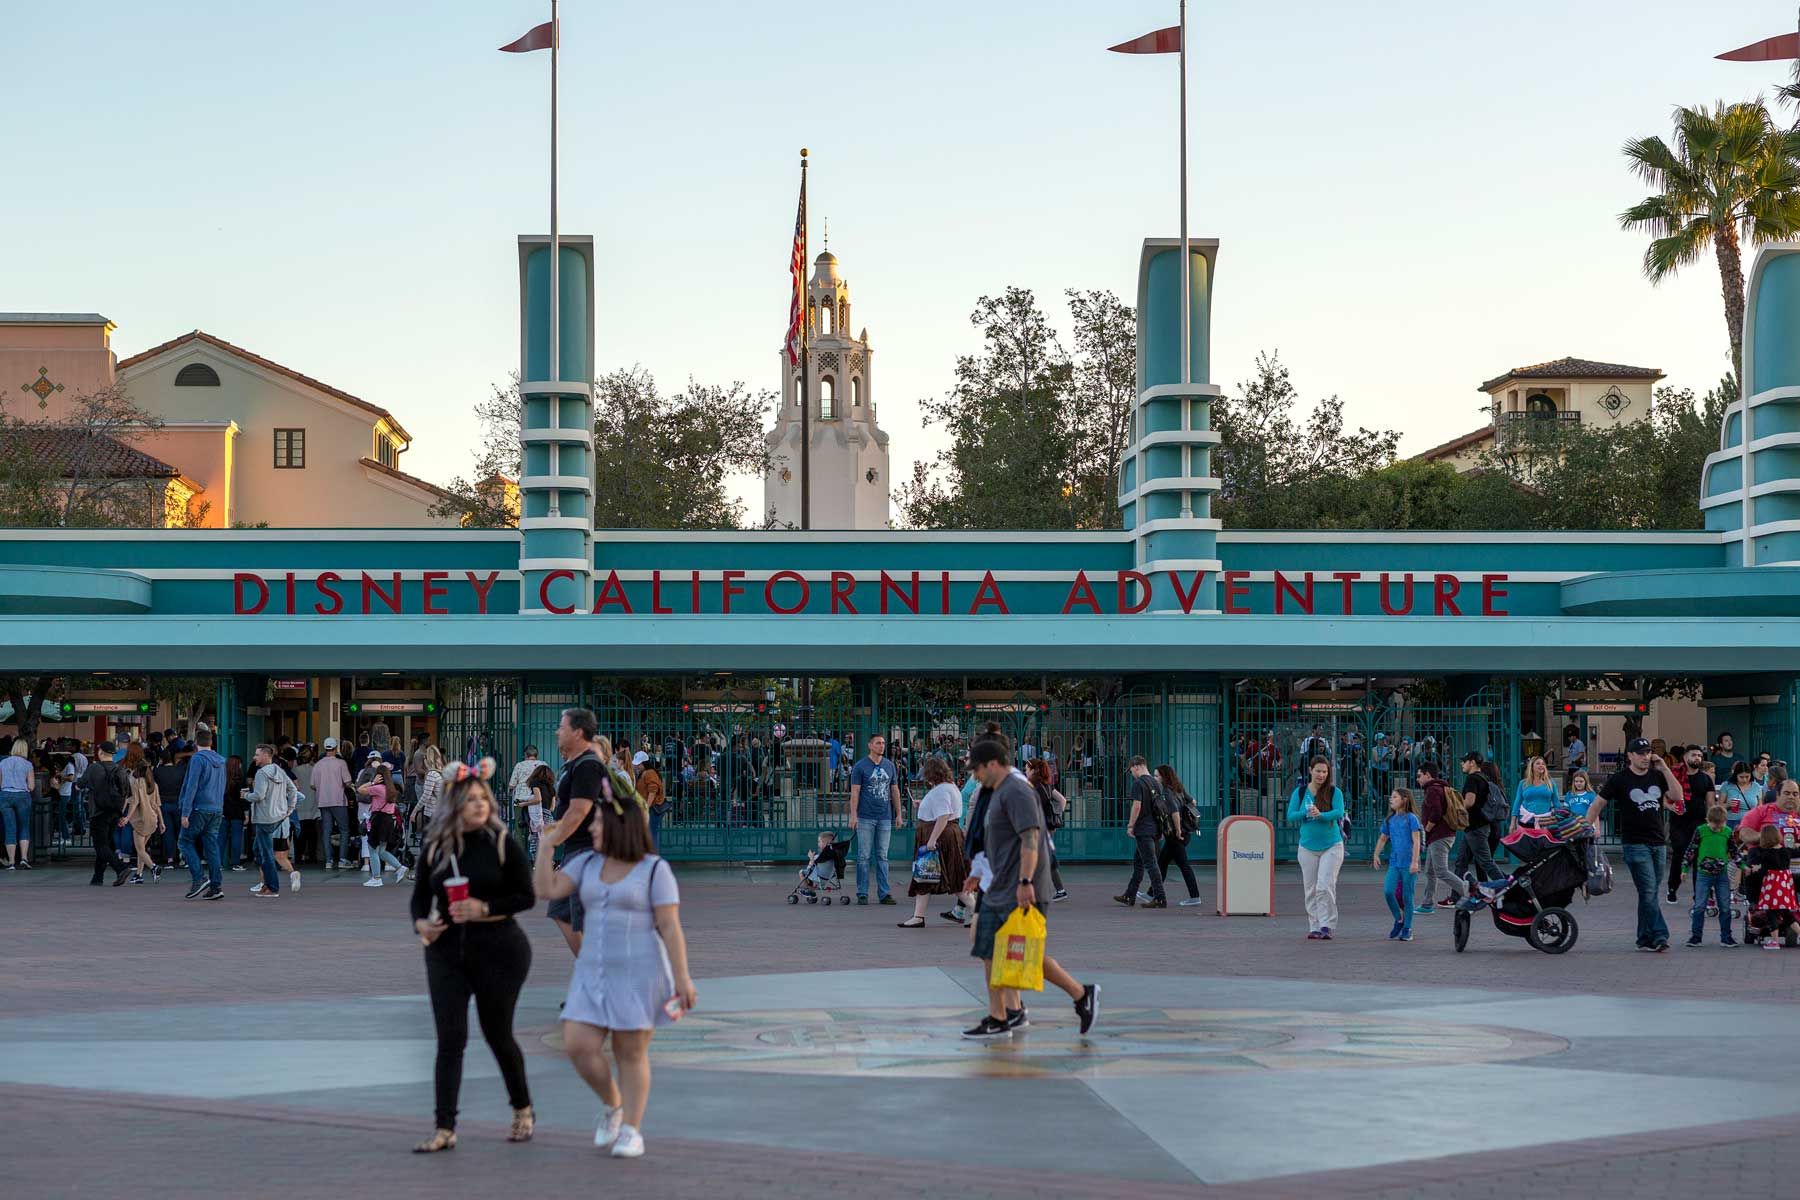 Posjetitelji posjećuju tematski park Disney California Adventure 25. veljače 2020. u Anaheimu u Kaliforniji. Boba Igera, koji je od 2005. bio izvršni direktor Disneya, zamjenjuje Bob Chapek, koji je prethodno vodio tvrtku